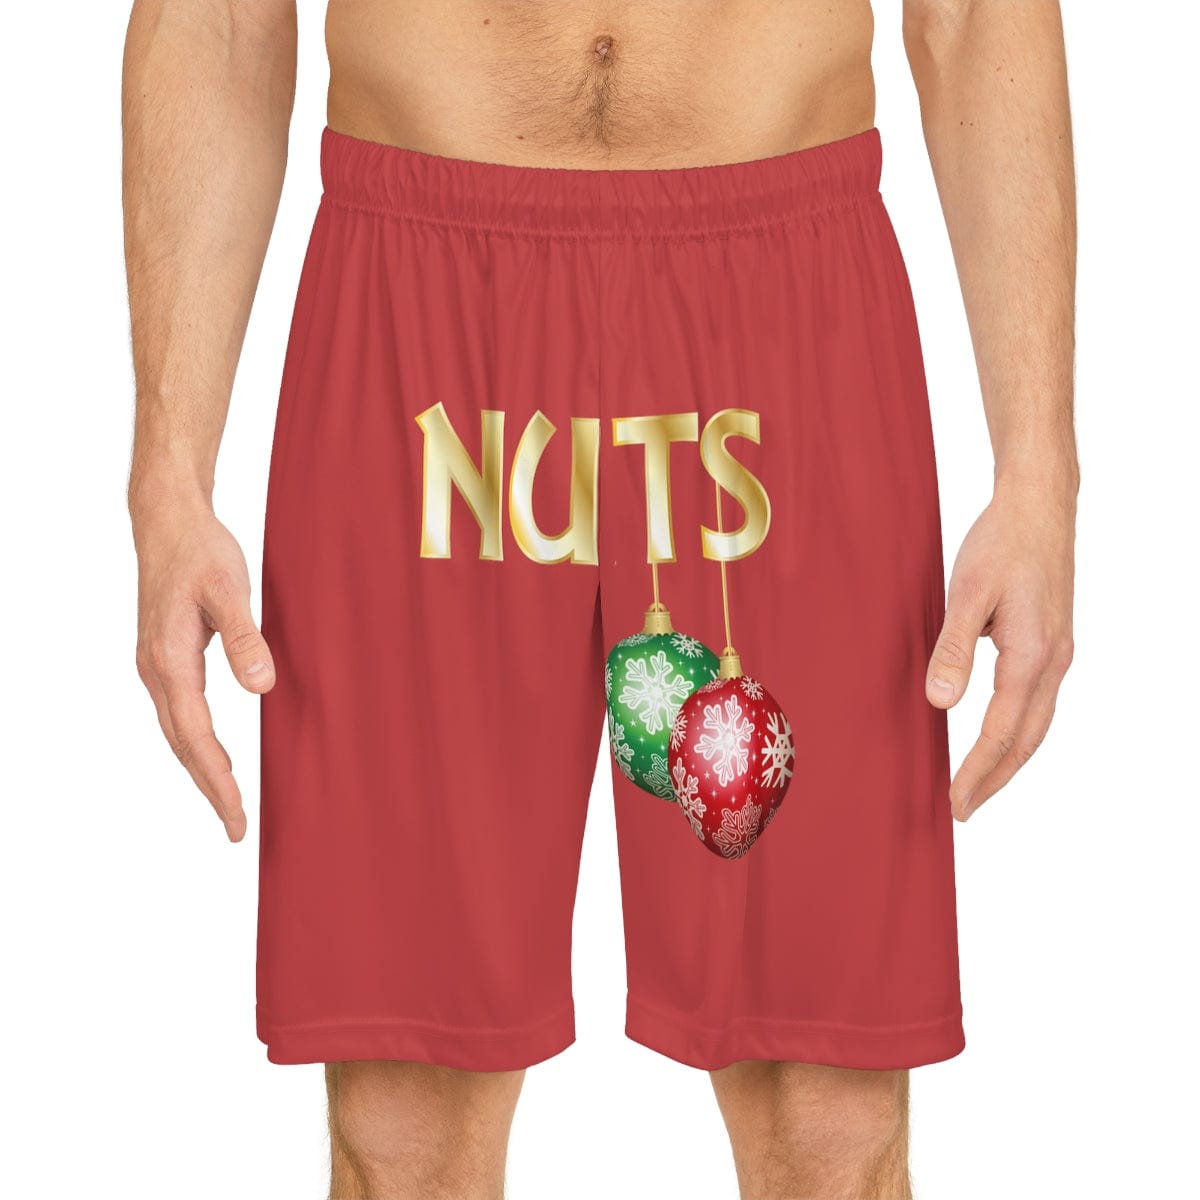 Nuts Basketball Shorts